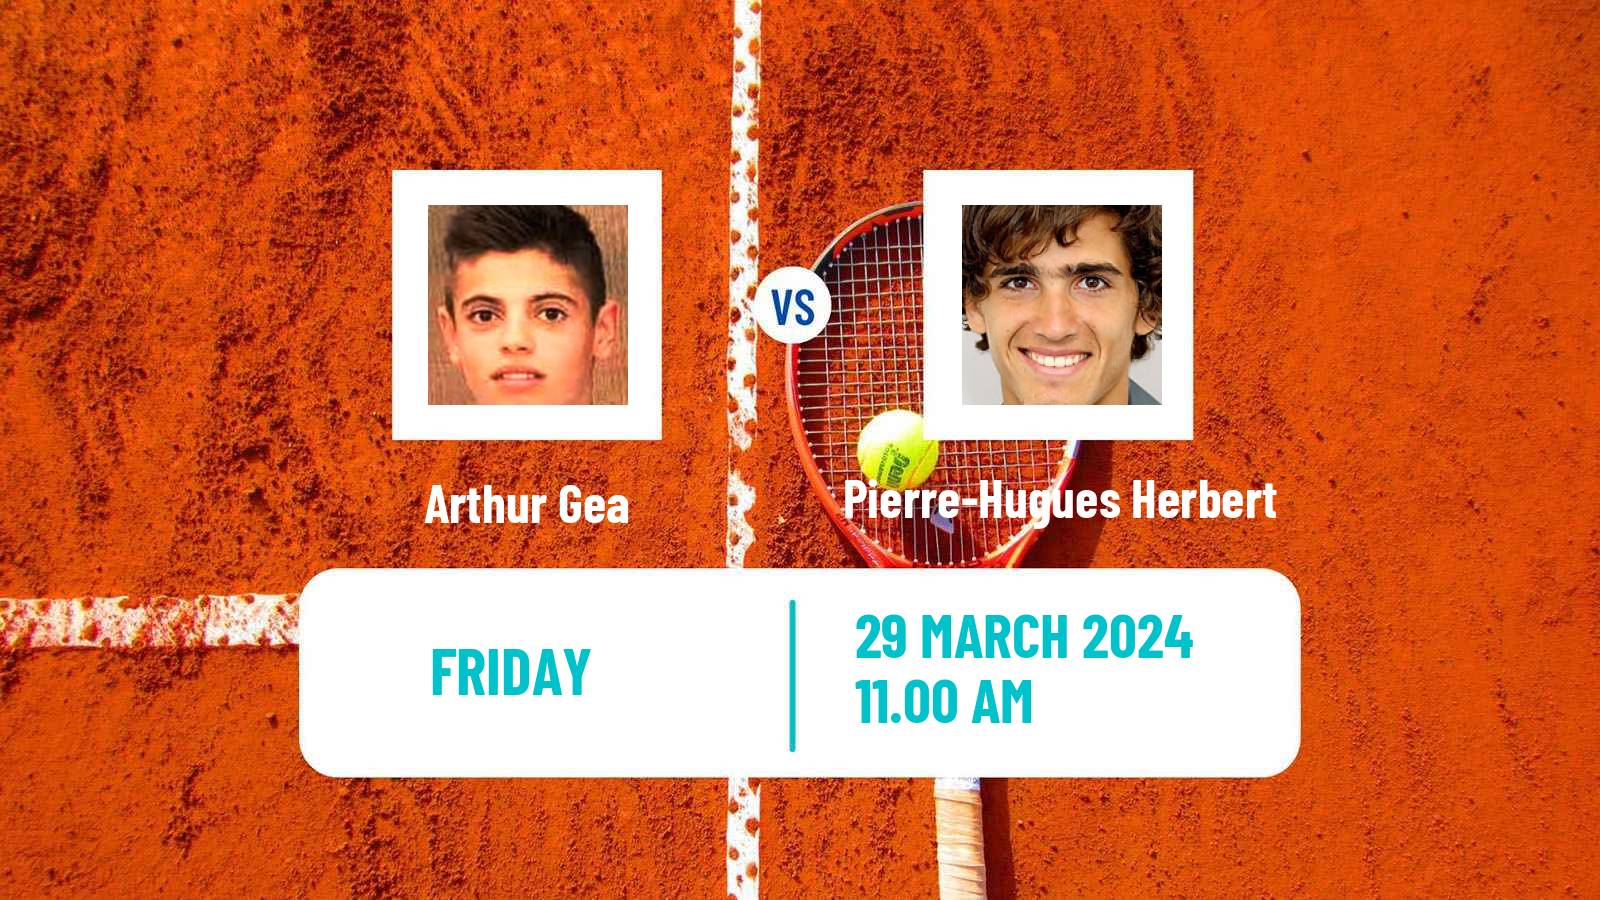 Tennis Naples 3 Challenger Men Arthur Gea - Pierre-Hugues Herbert